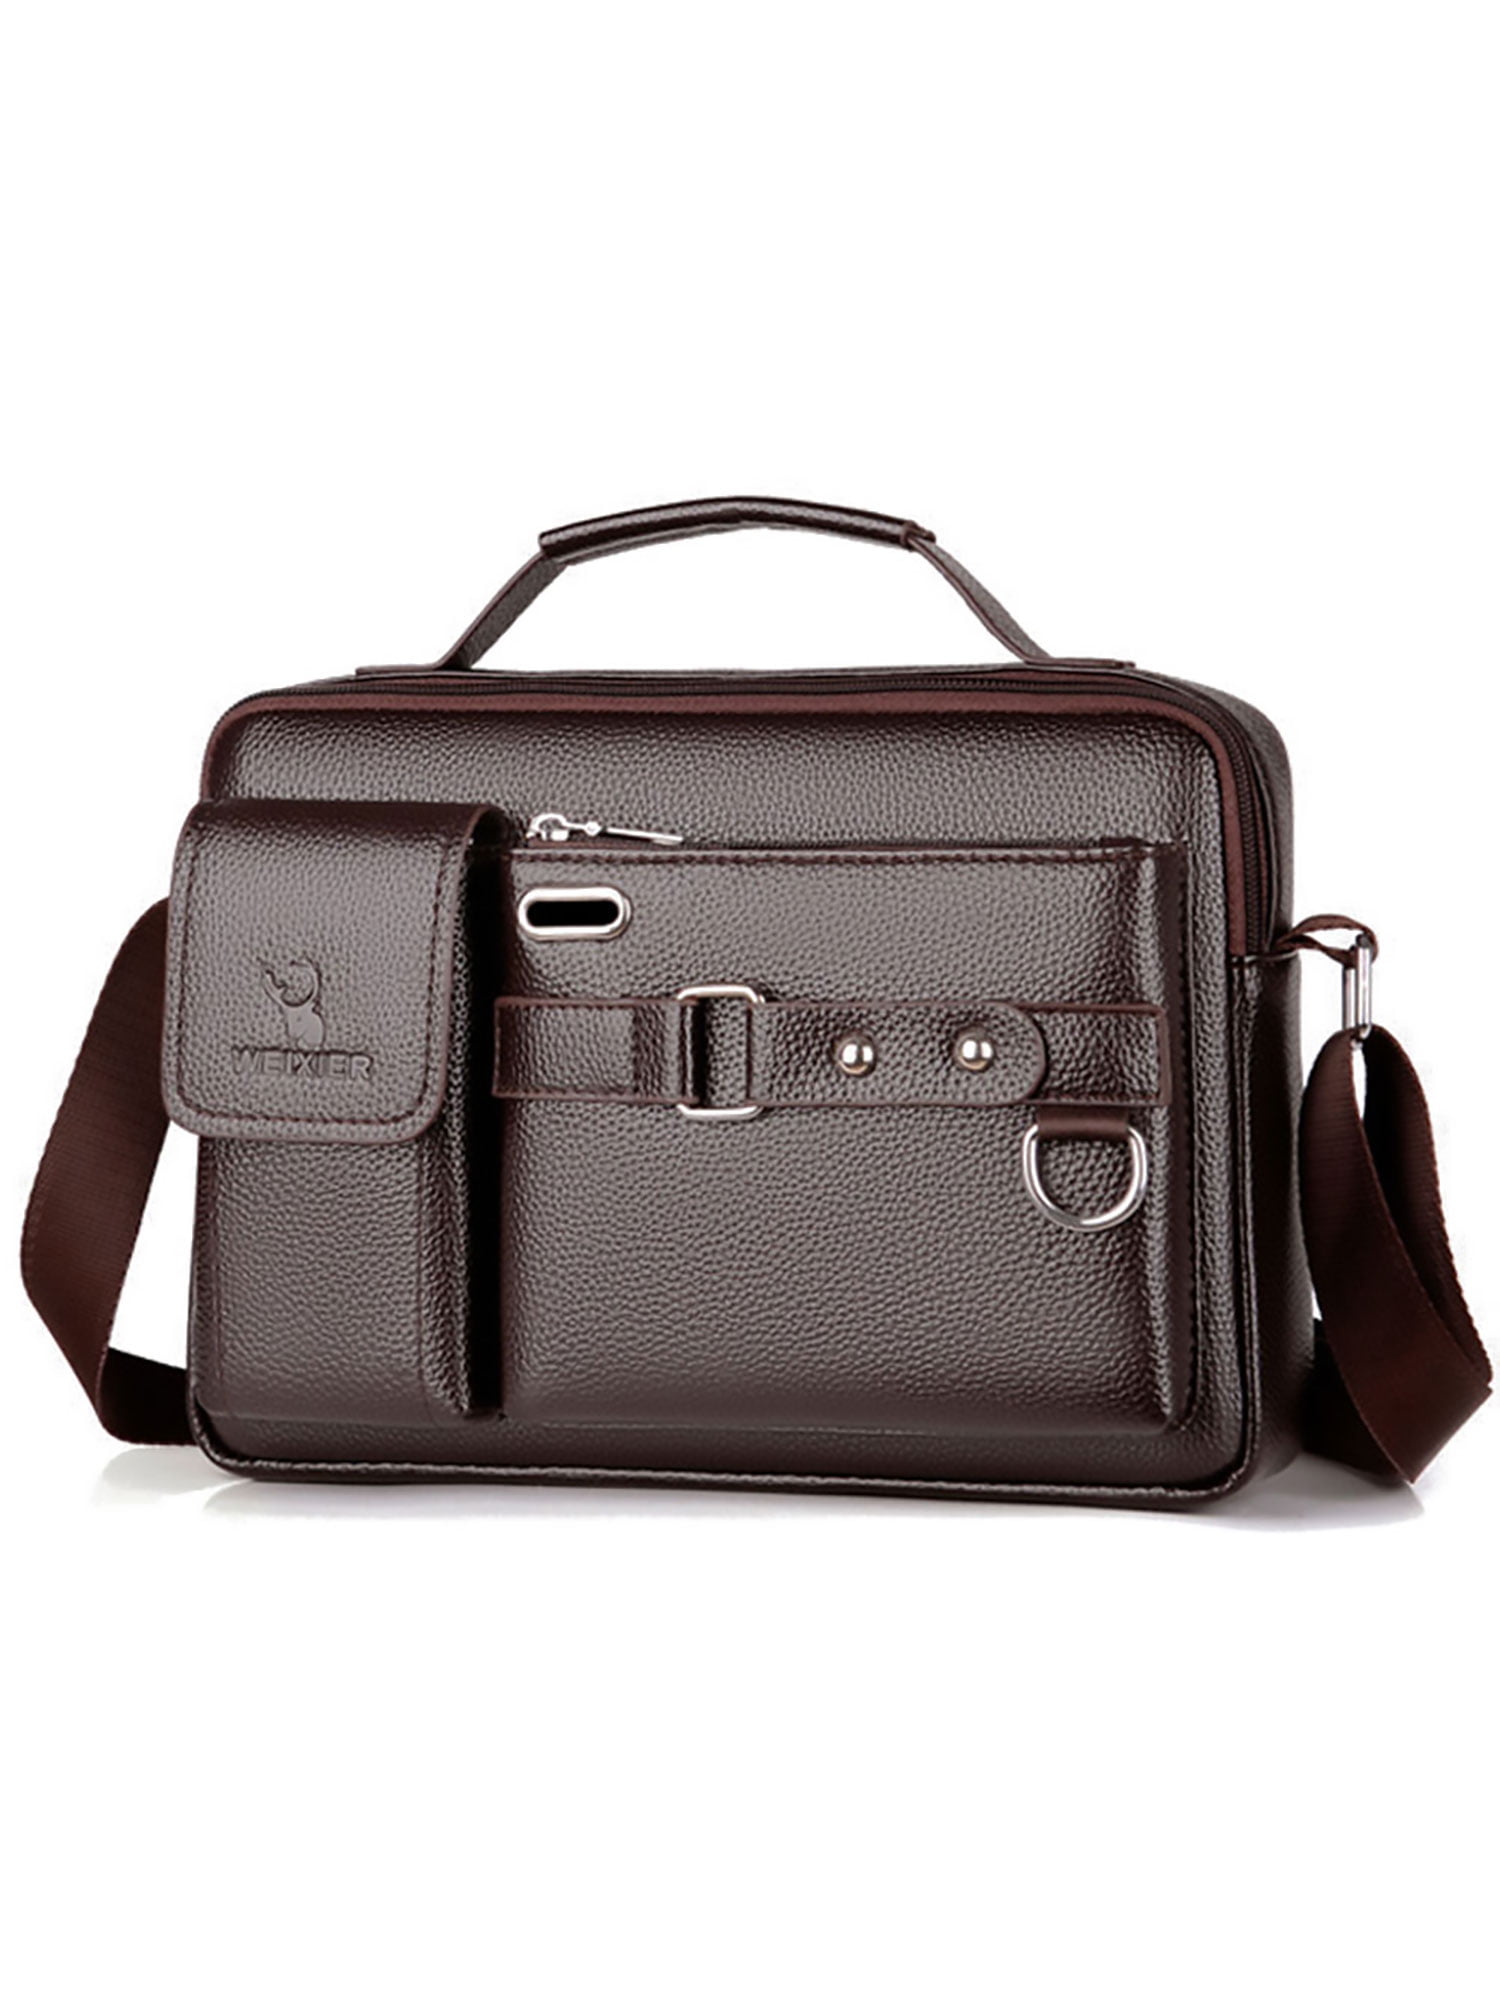 Augus Mens Leather Briefcase 15.5 Inch Handbag Crossbody Messenger Bag 